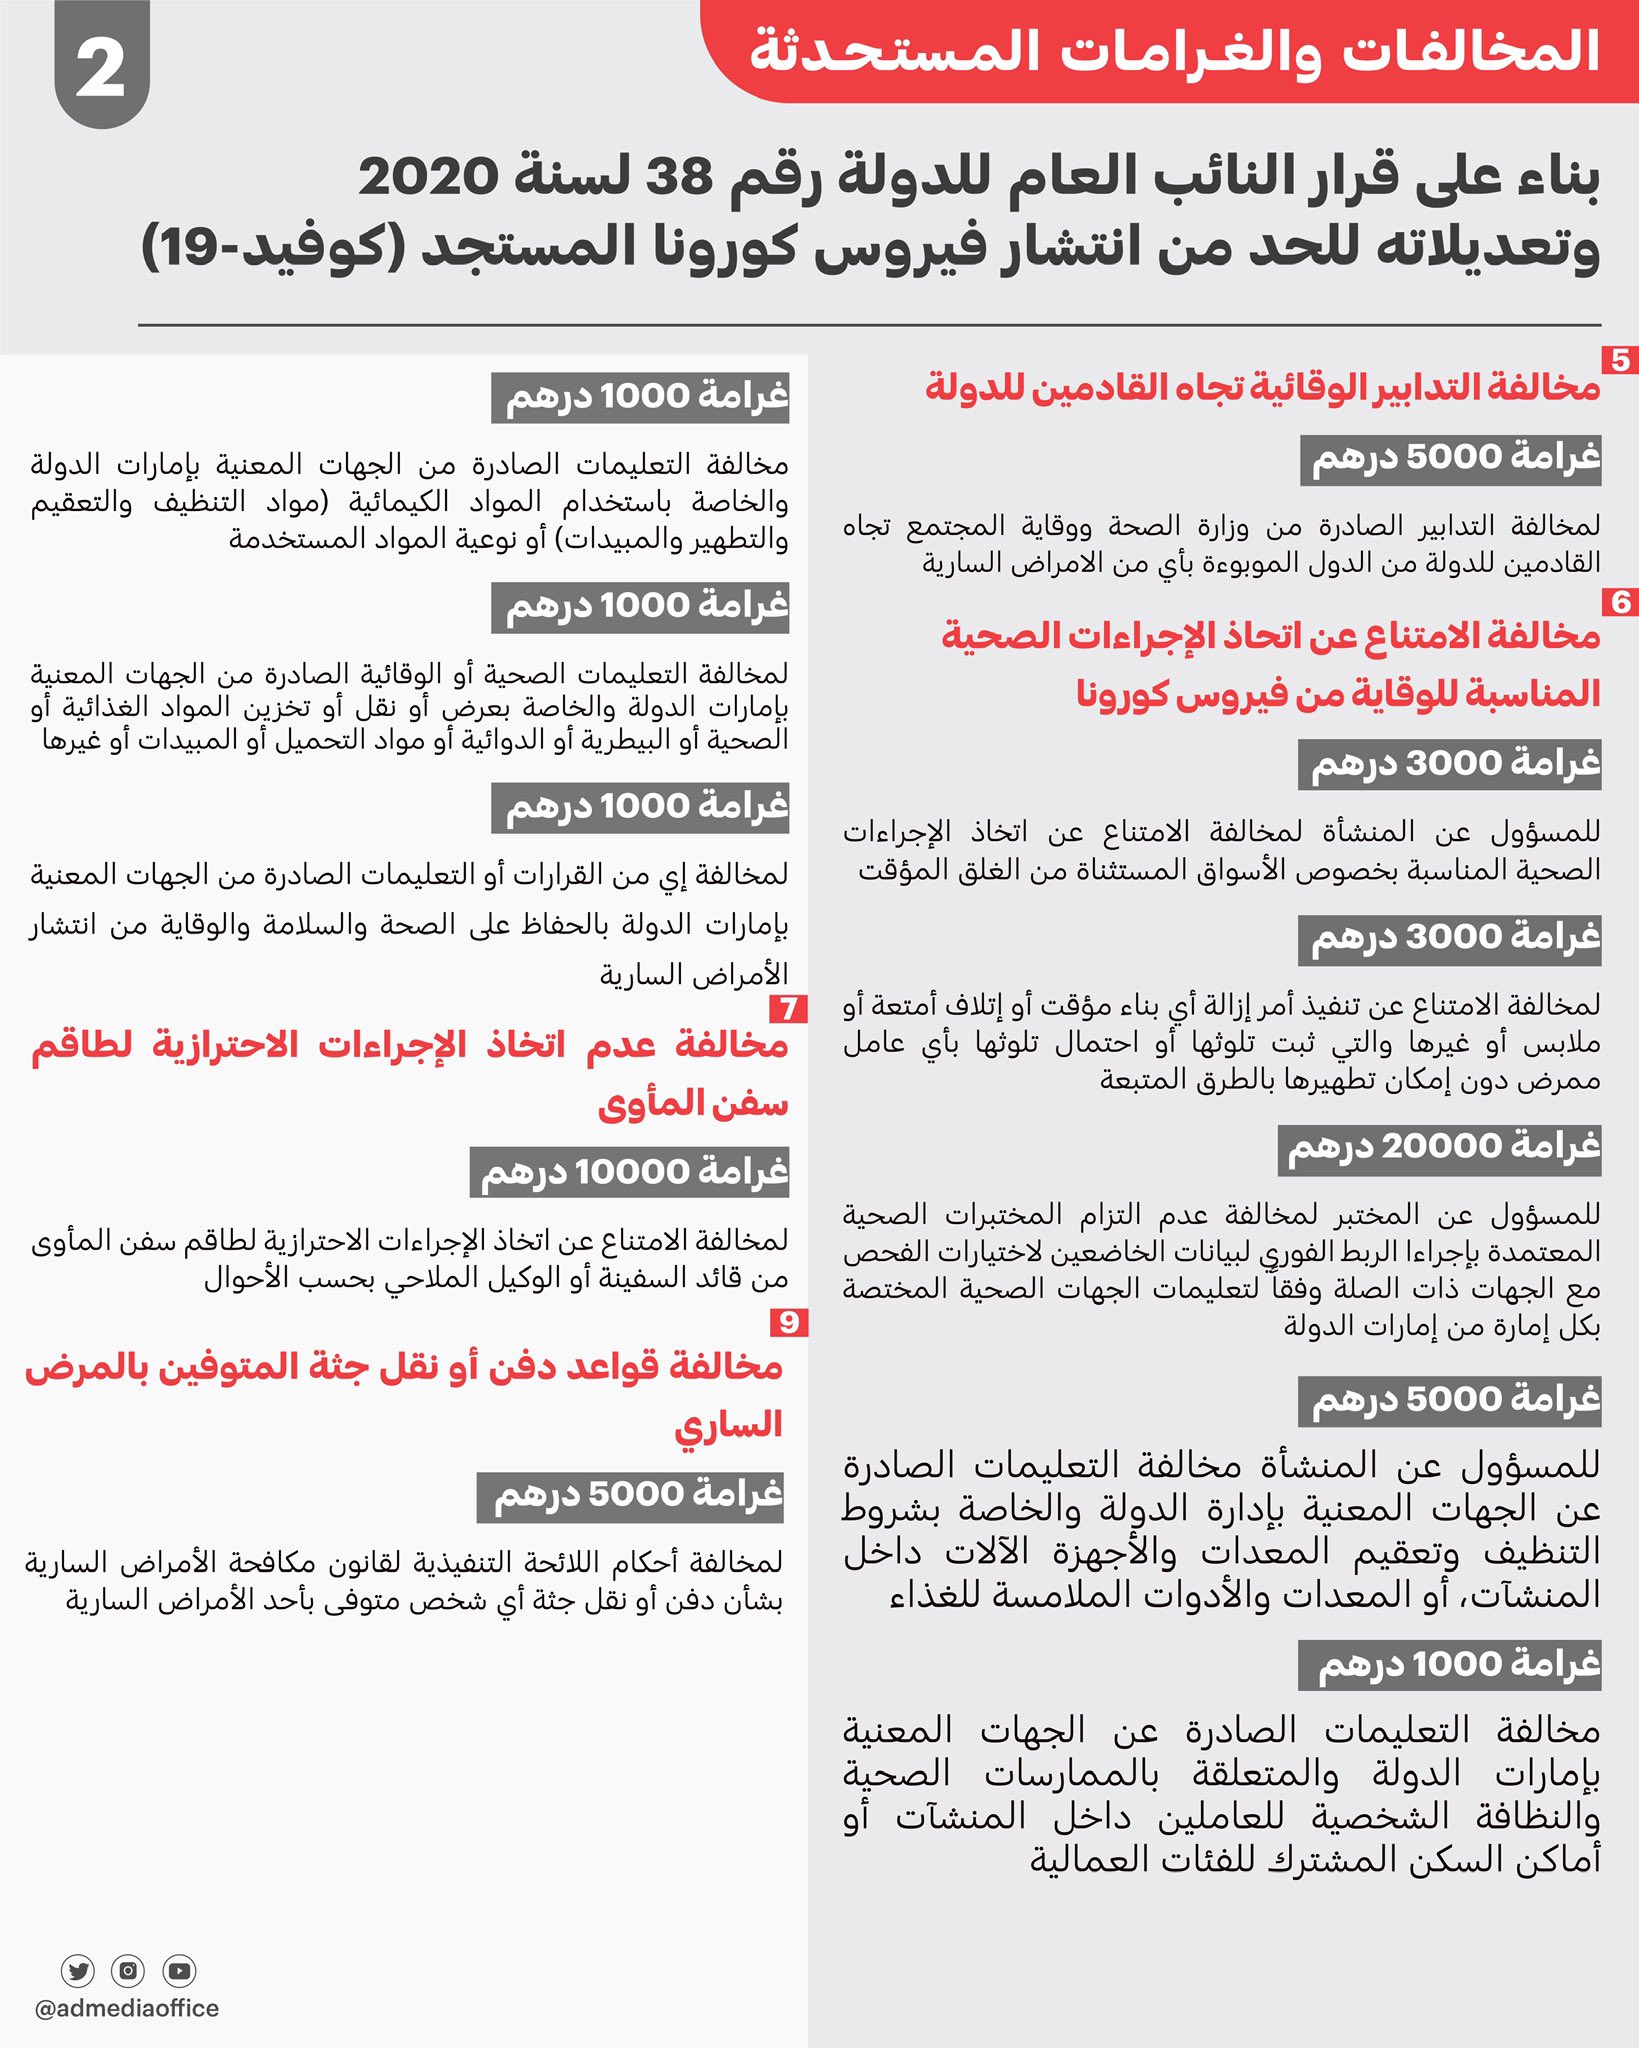 تشريعات مكافحة فيروس كورونا المستجد كوفيد 19 البوابة الرسمية لحكومة الإمارات العربية المتحدة